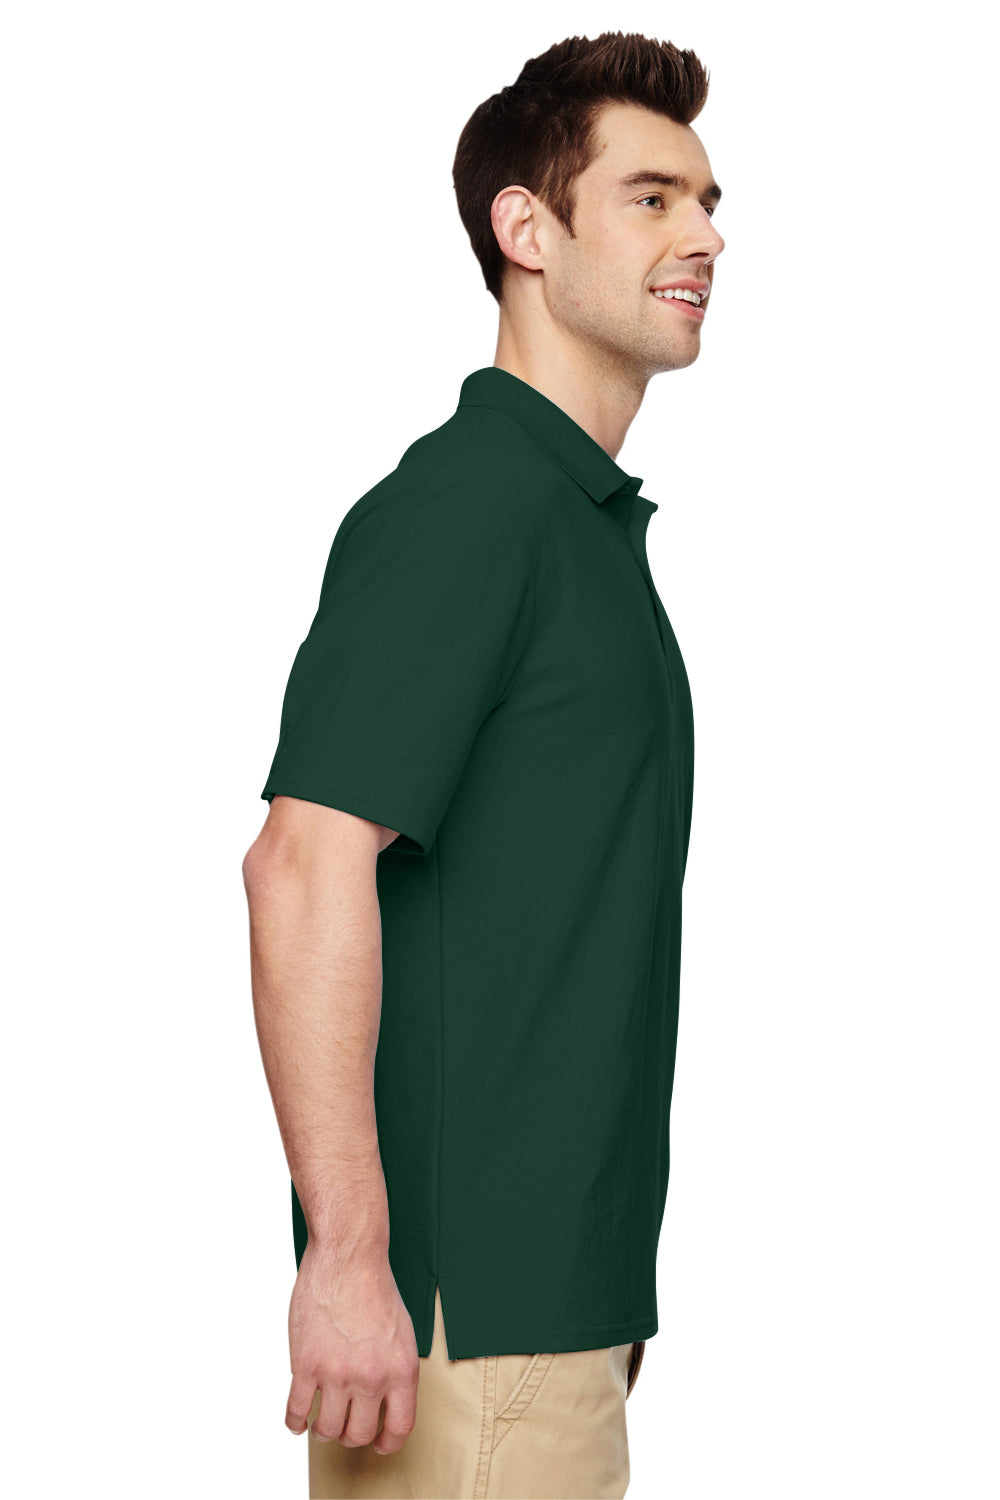 Gildan G728 Mens DryBlend Moisture Wicking Short Sleeve Polo Shirt Forest Green Side